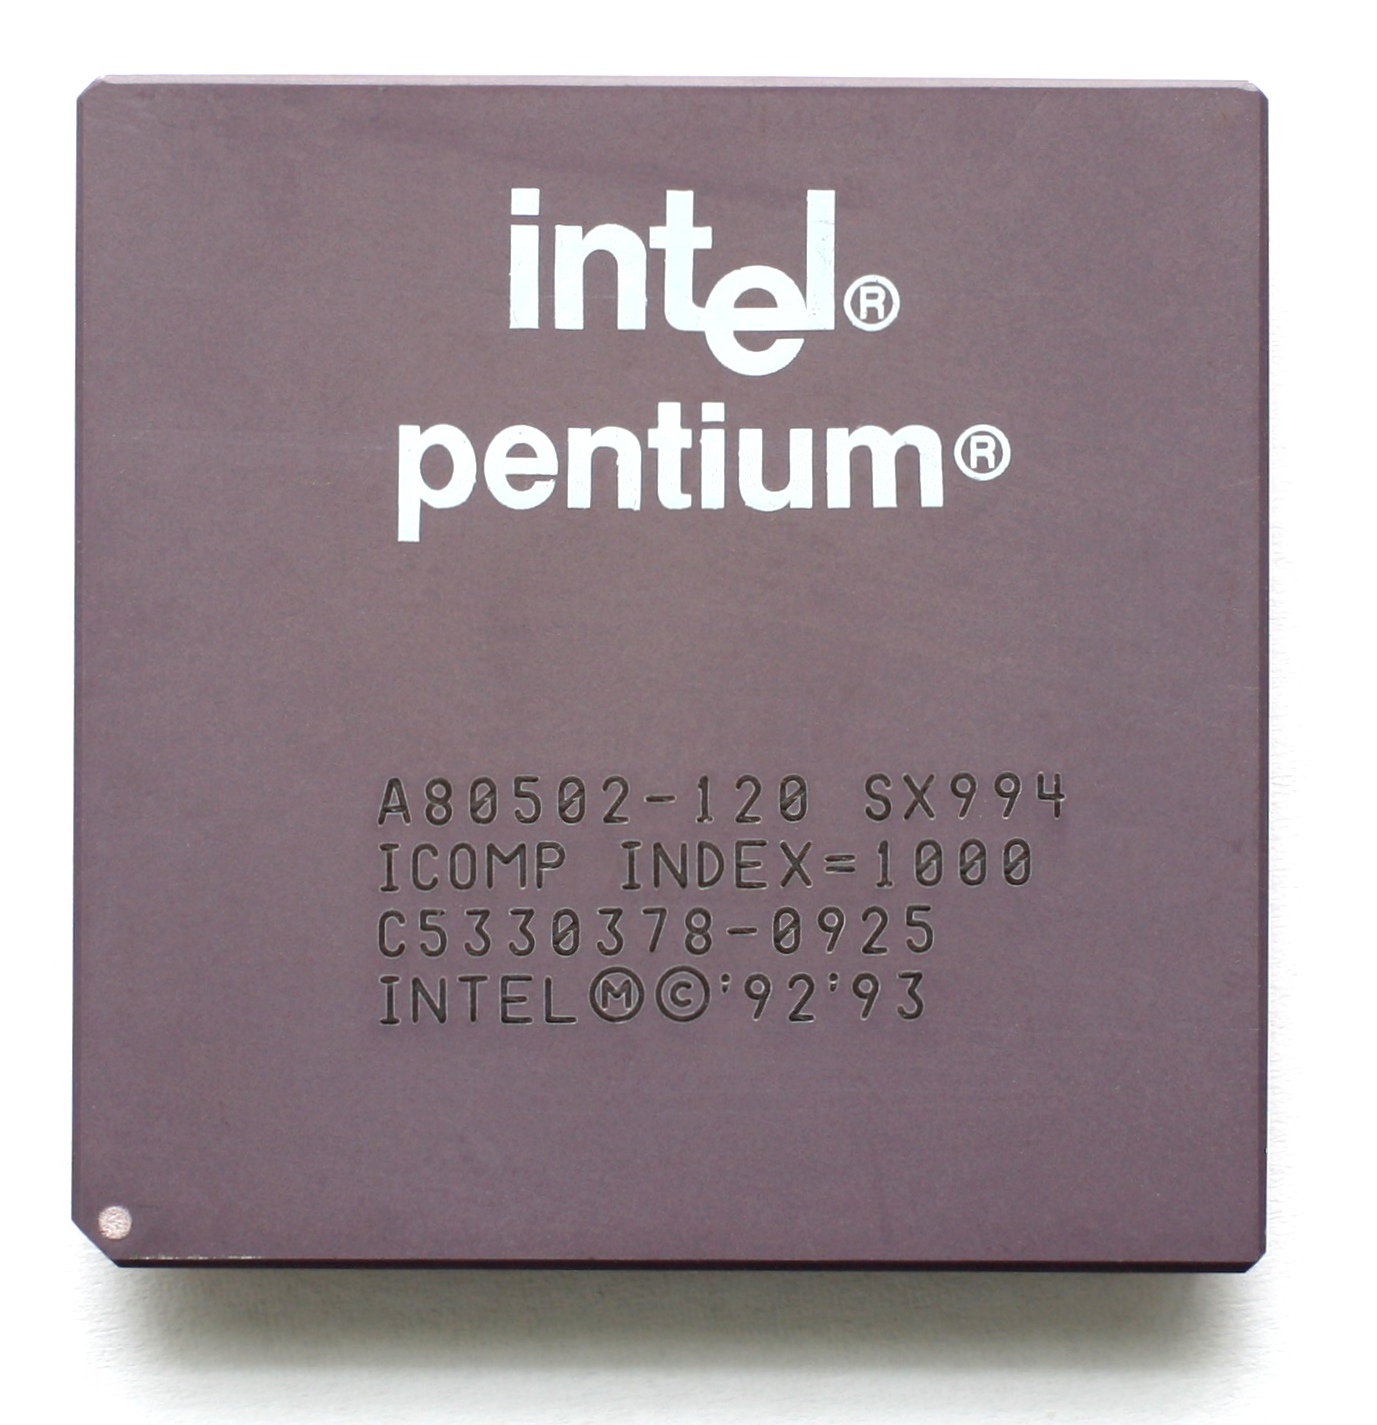 Intel Pentium 120 SX994